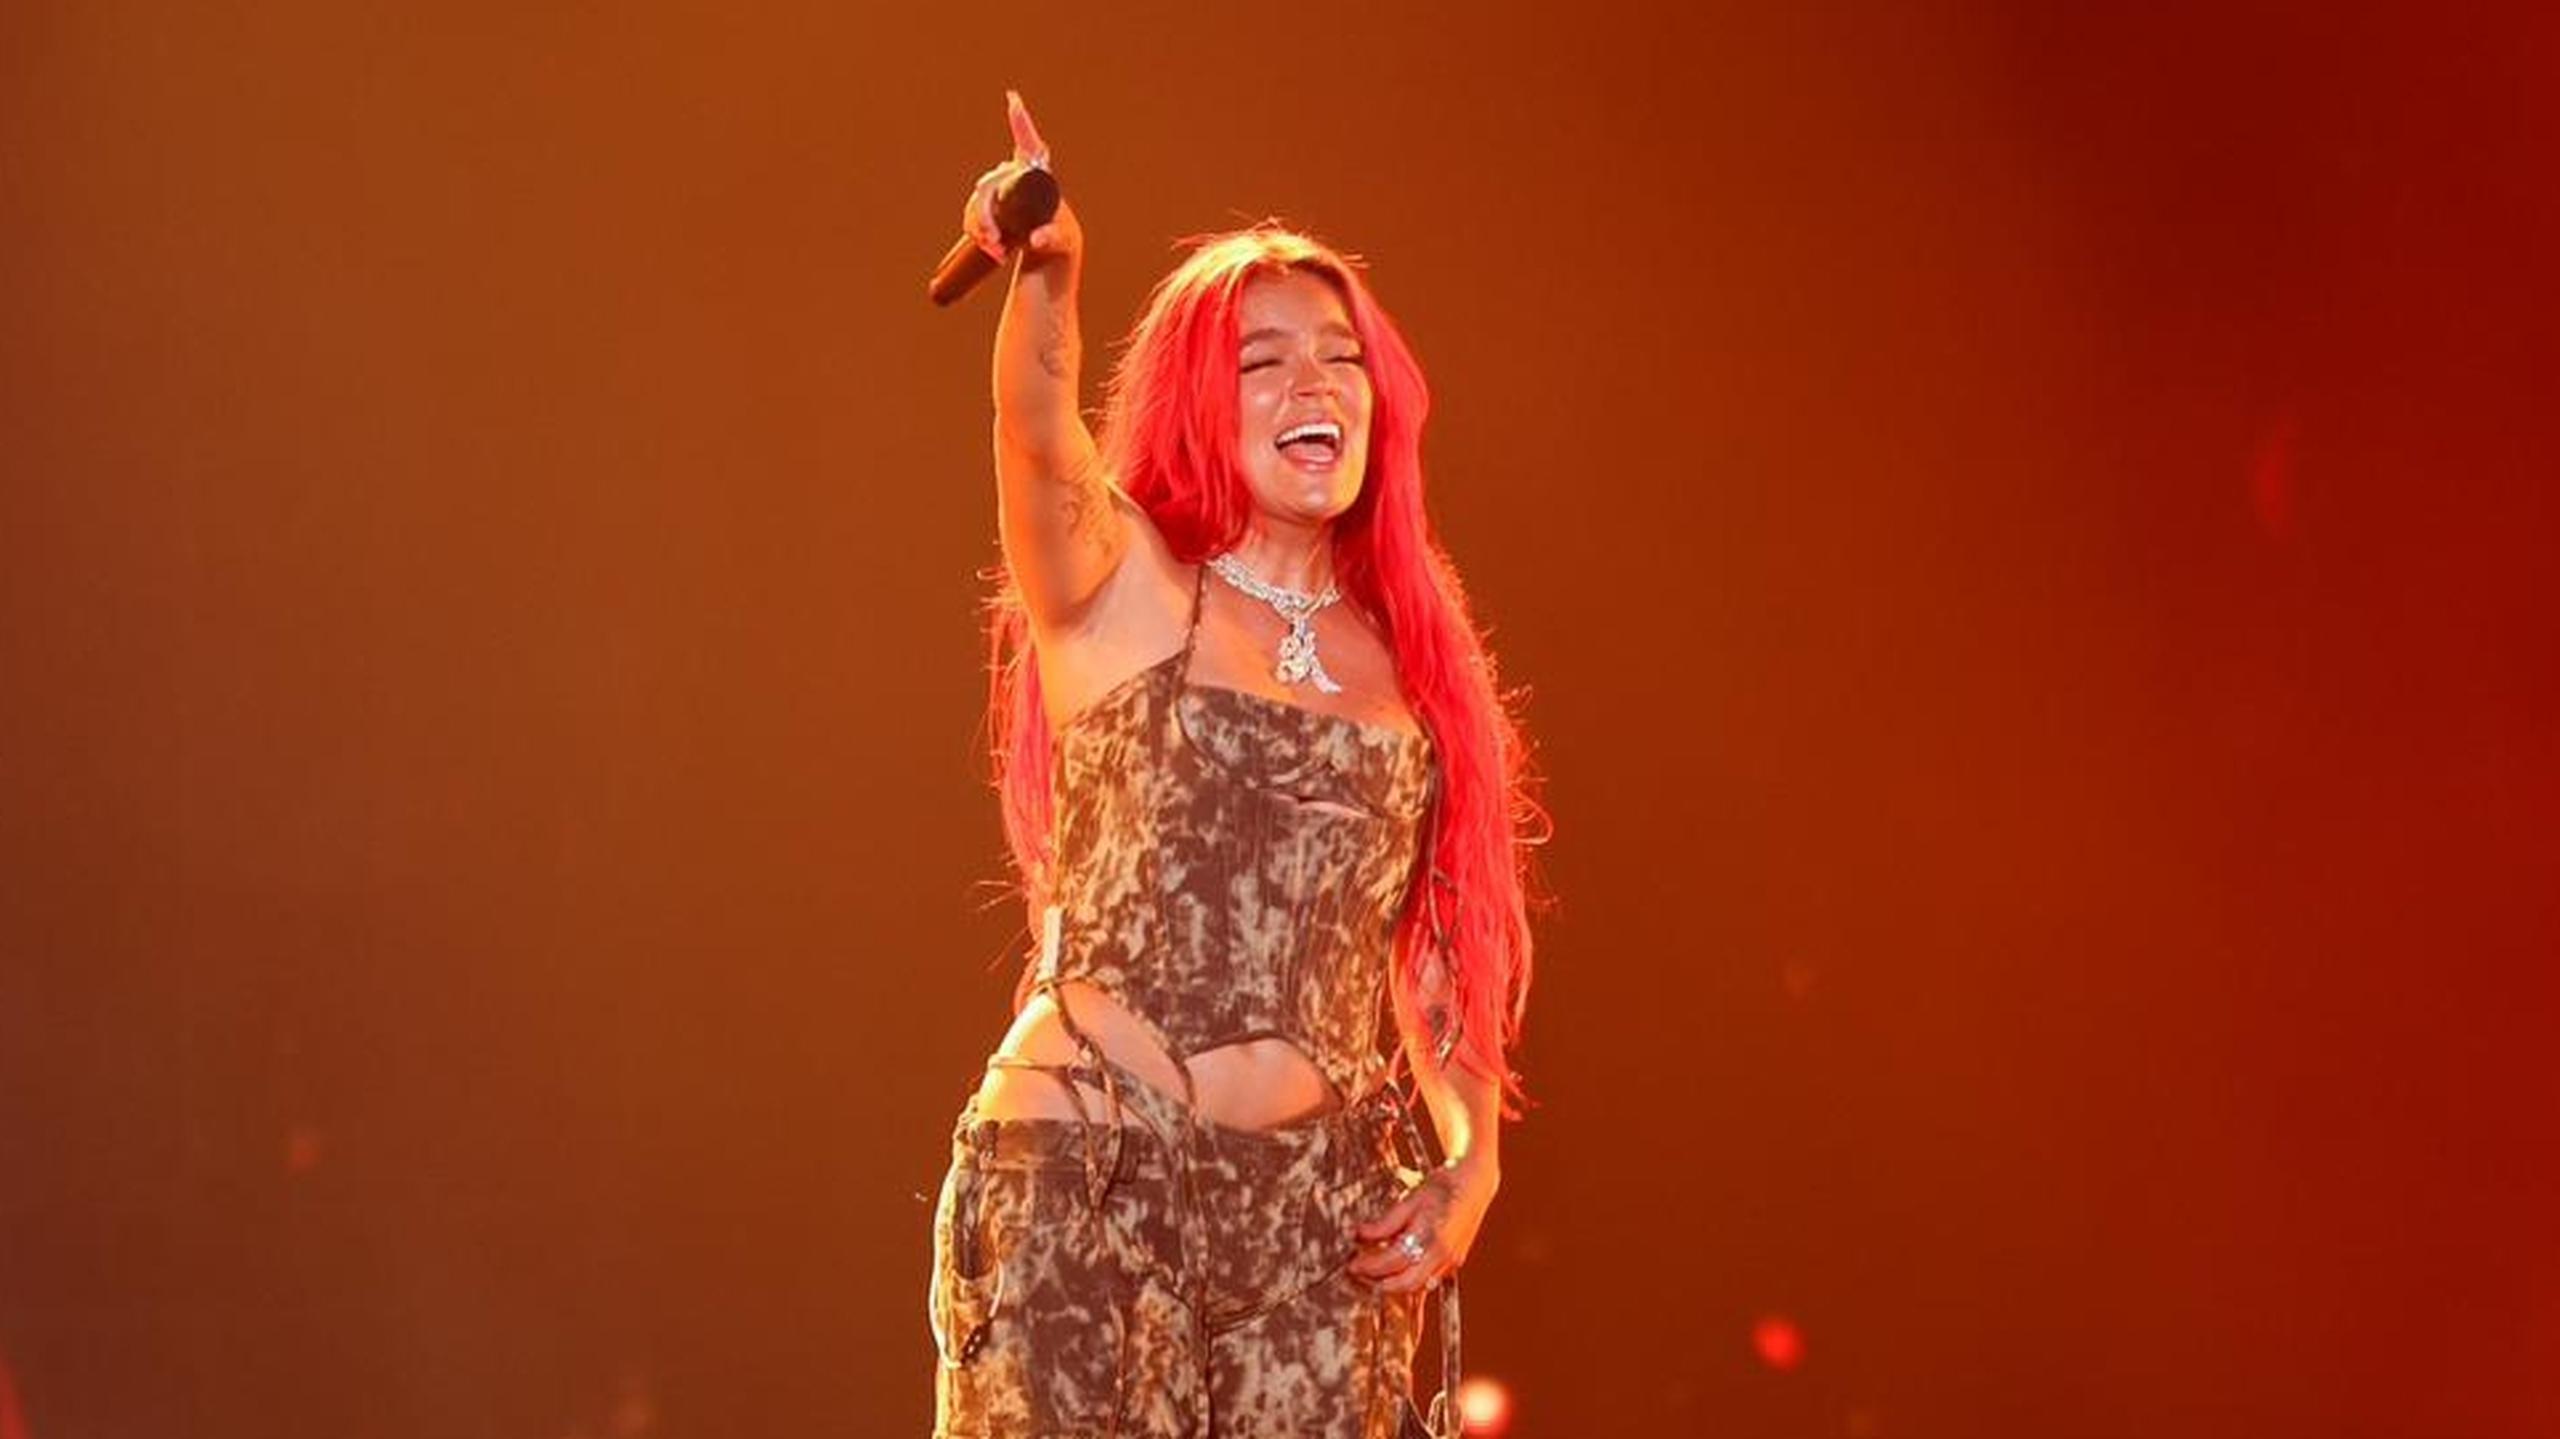 La exactriz pornográfica se desbordó en elogios a "La Bichota" en sus redes sociales, tras asistir a su concierto en el Hard Rock Stadium de Miami.